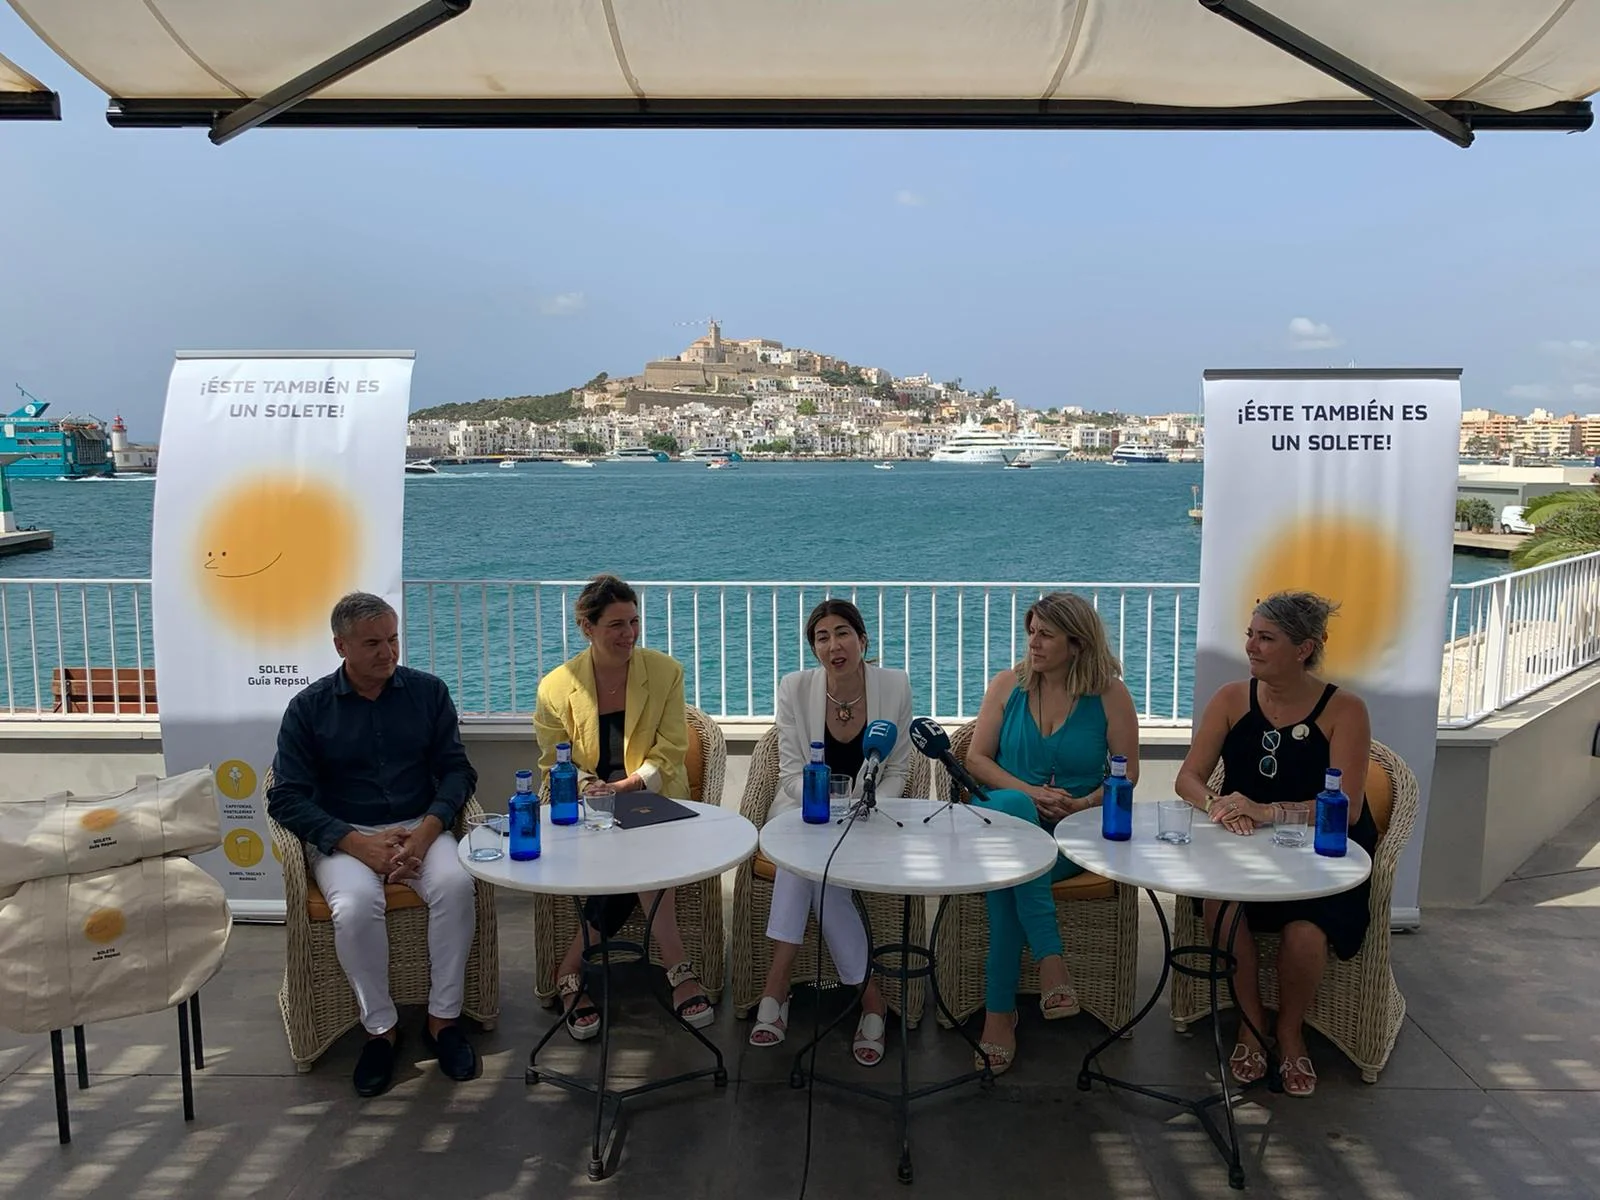 La Guía Repsol presenta en Ibiza los soletes de verano